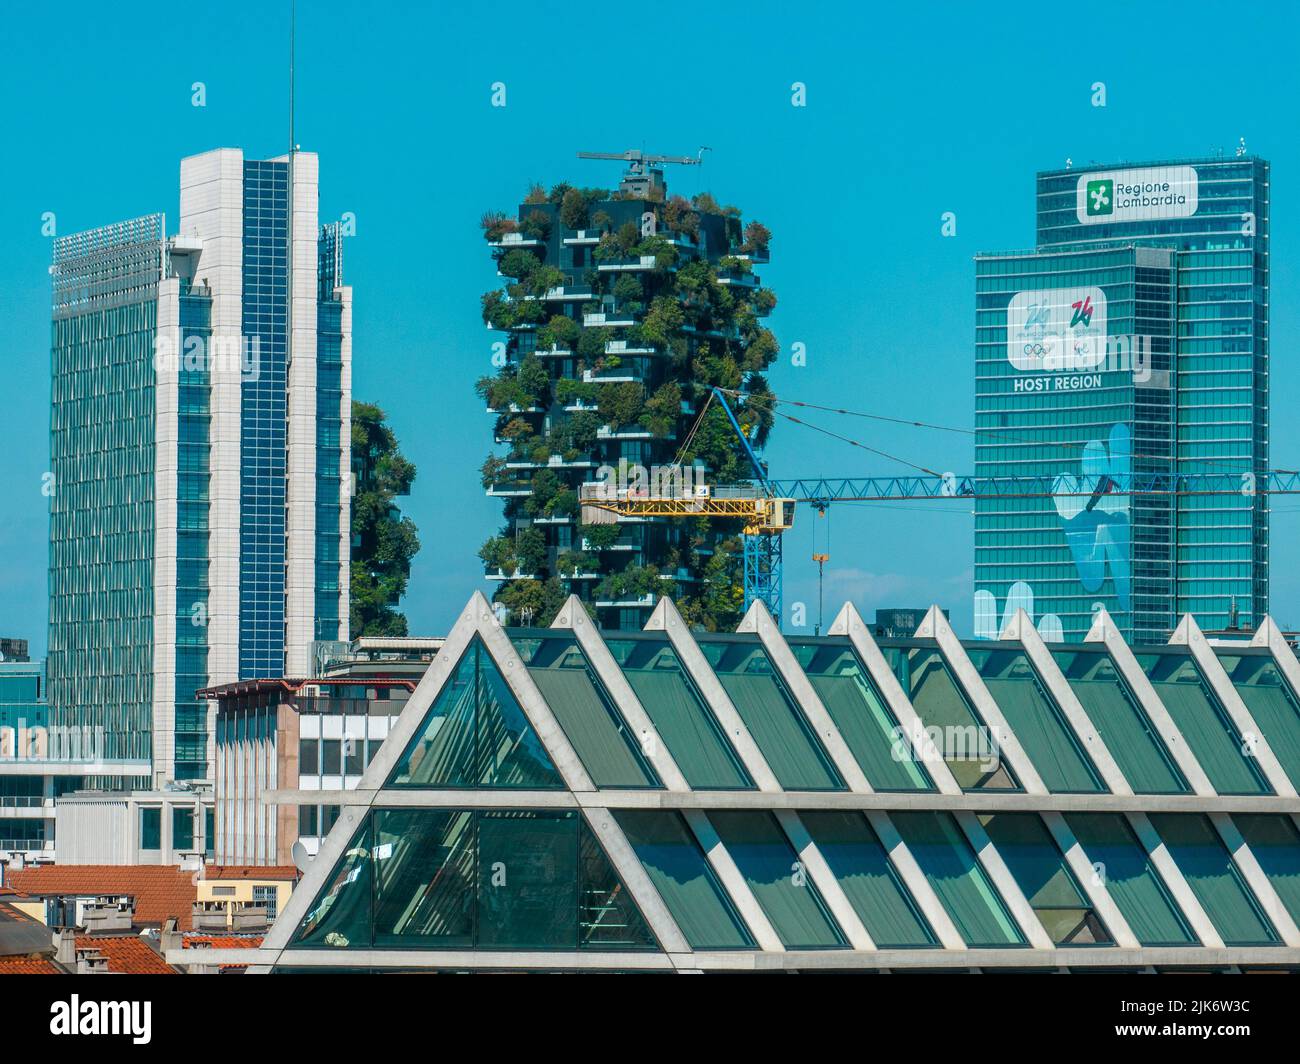 Vue aérienne du nouveau centre de Milan, gratte-ciels autour de la Piazza Gae Aulenti.Palazzo Lombardia et Bosco Verticale. Toit en pyramide. italie Banque D'Images